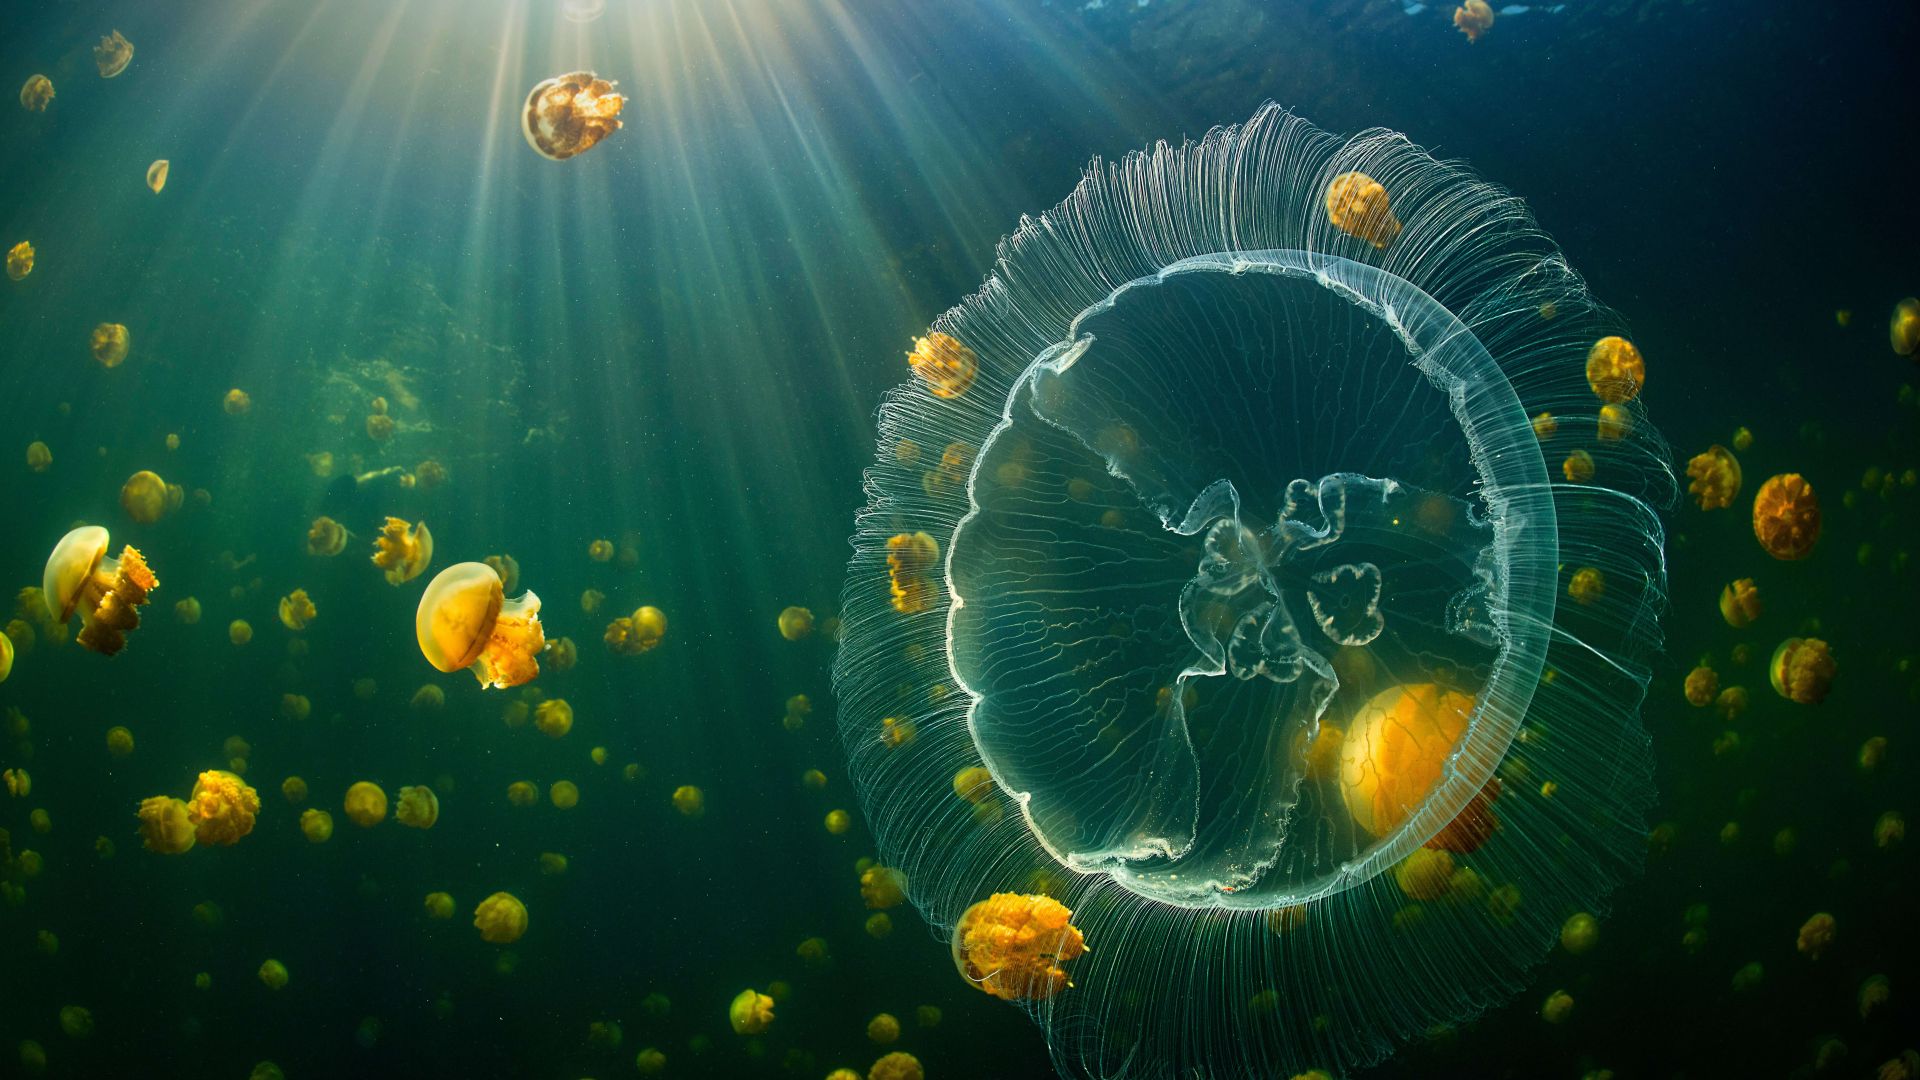 jellyfish, underwater, 8K (horizontal)